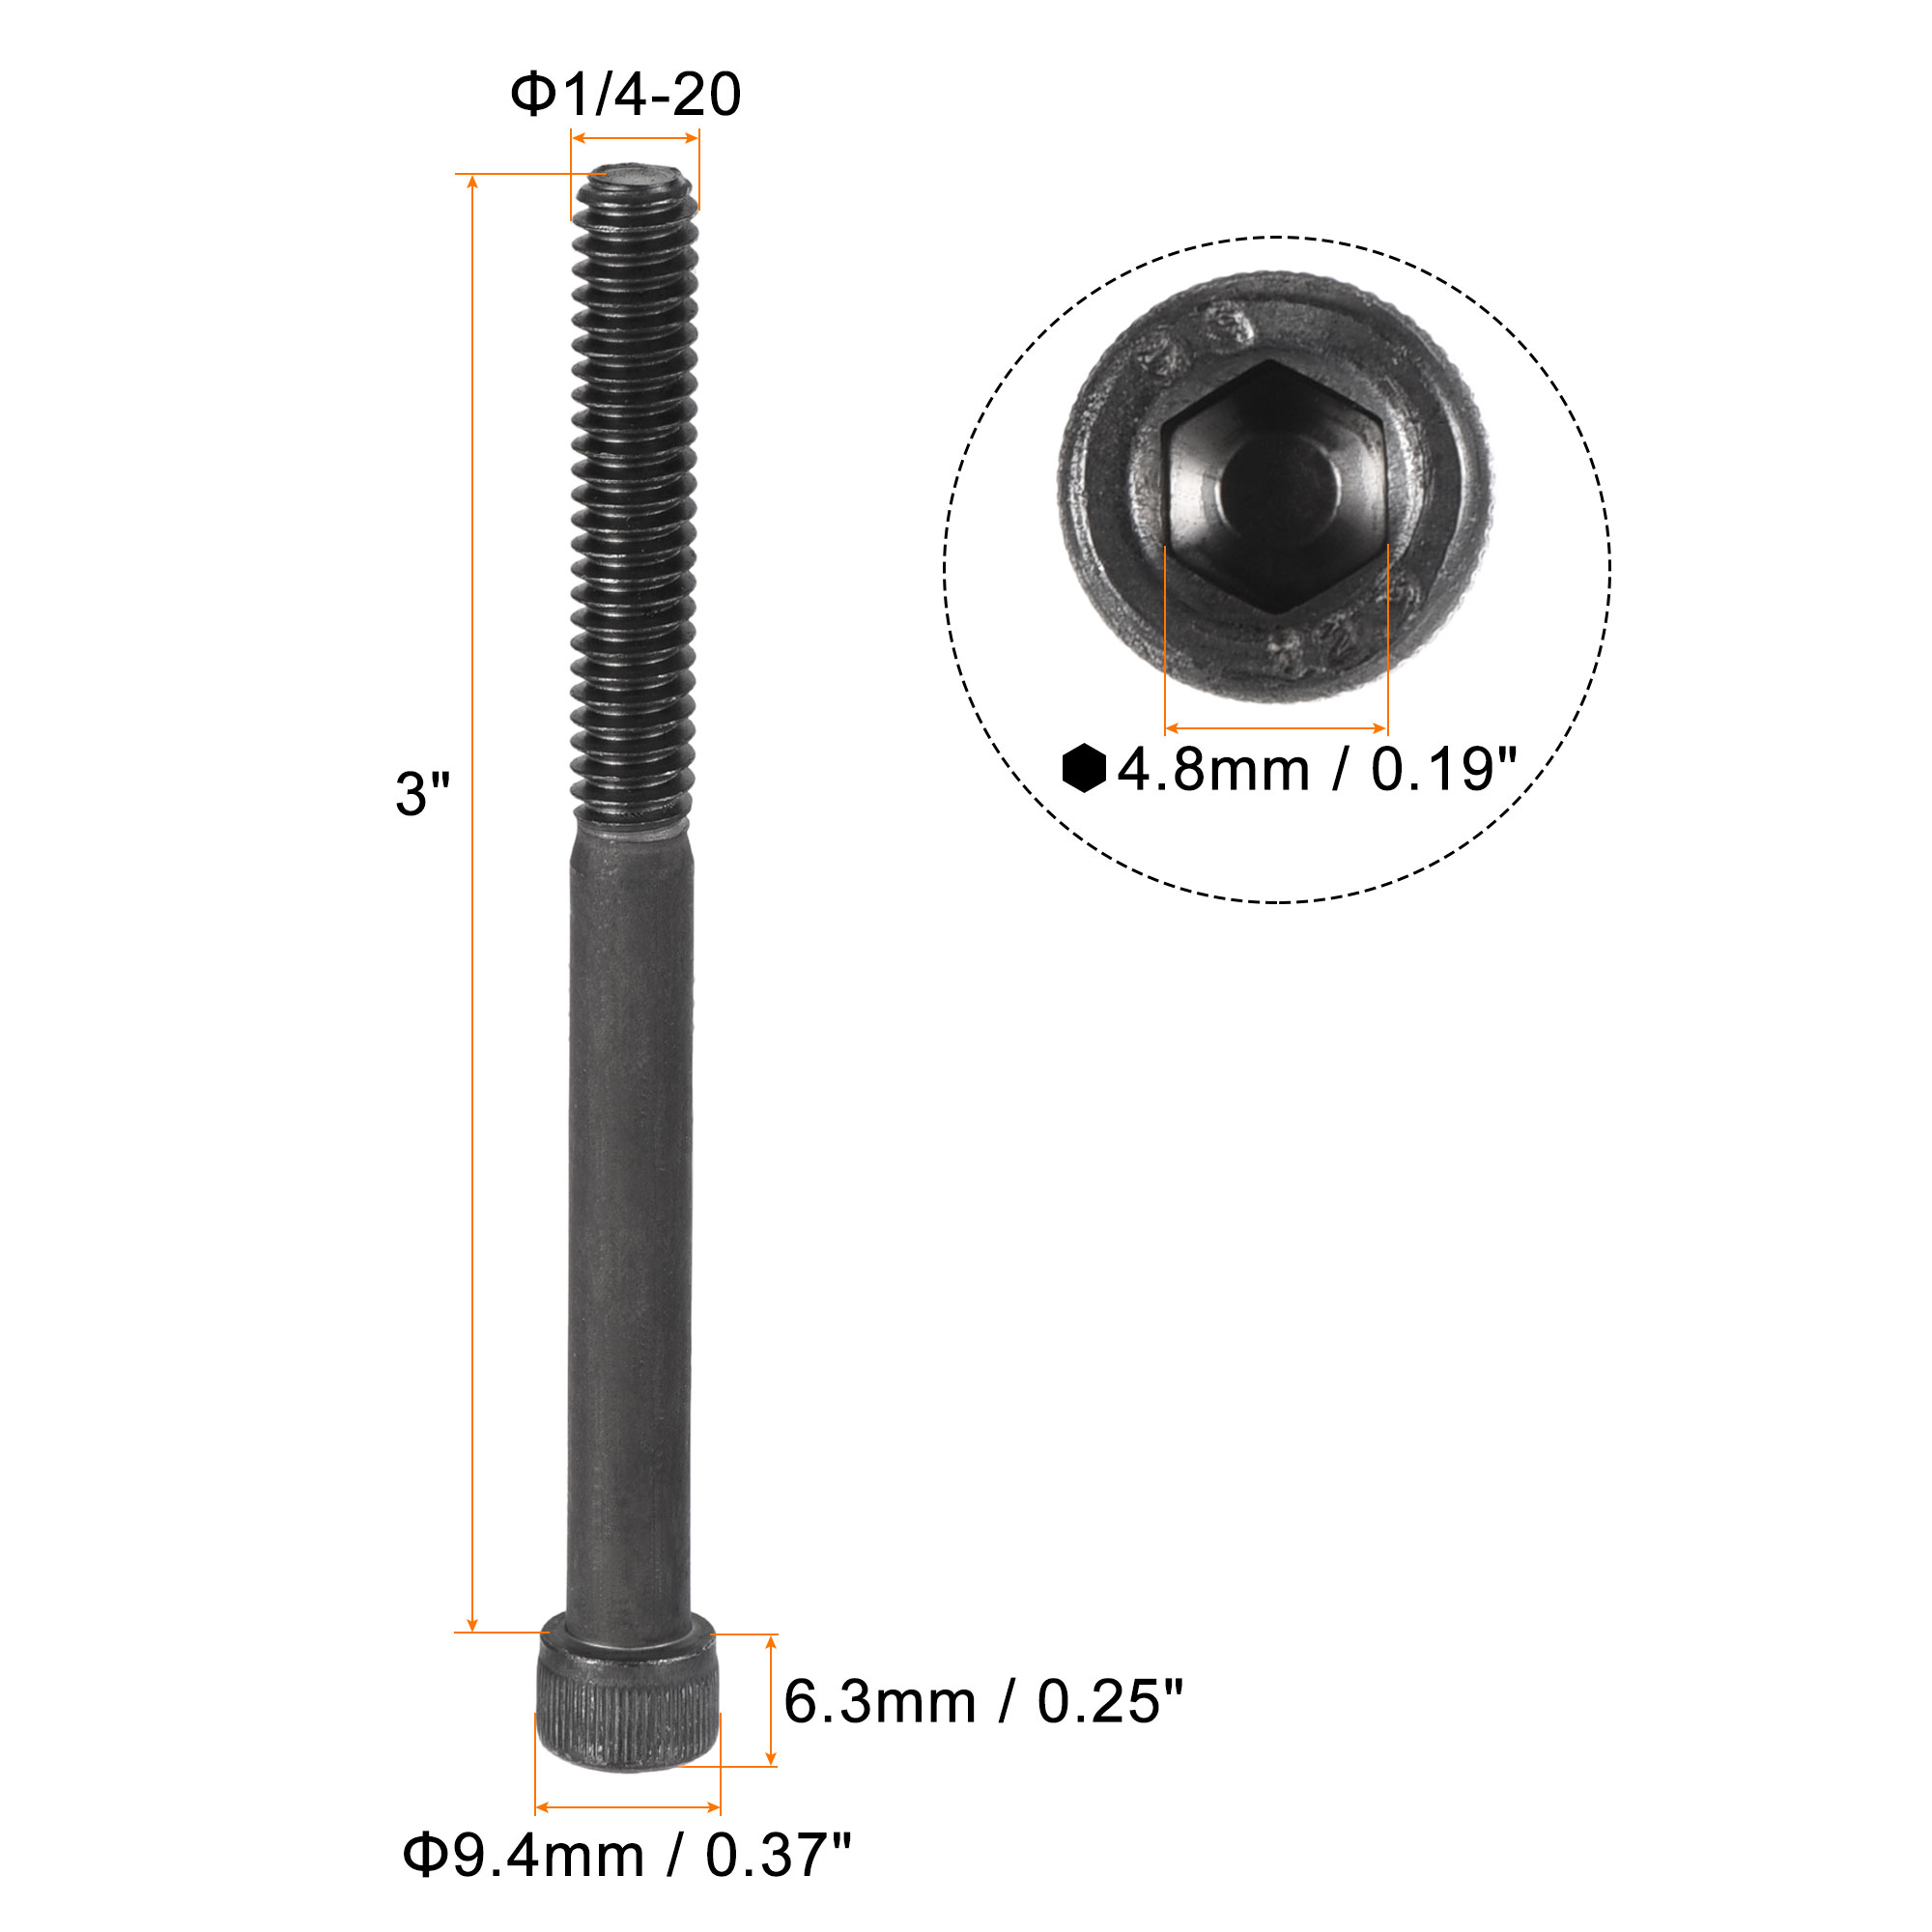 1/4-20x3" Hex Socket Bolts 12.9 Grade Alloy Steel Black Oxide 25 Pack - image 2 of 5